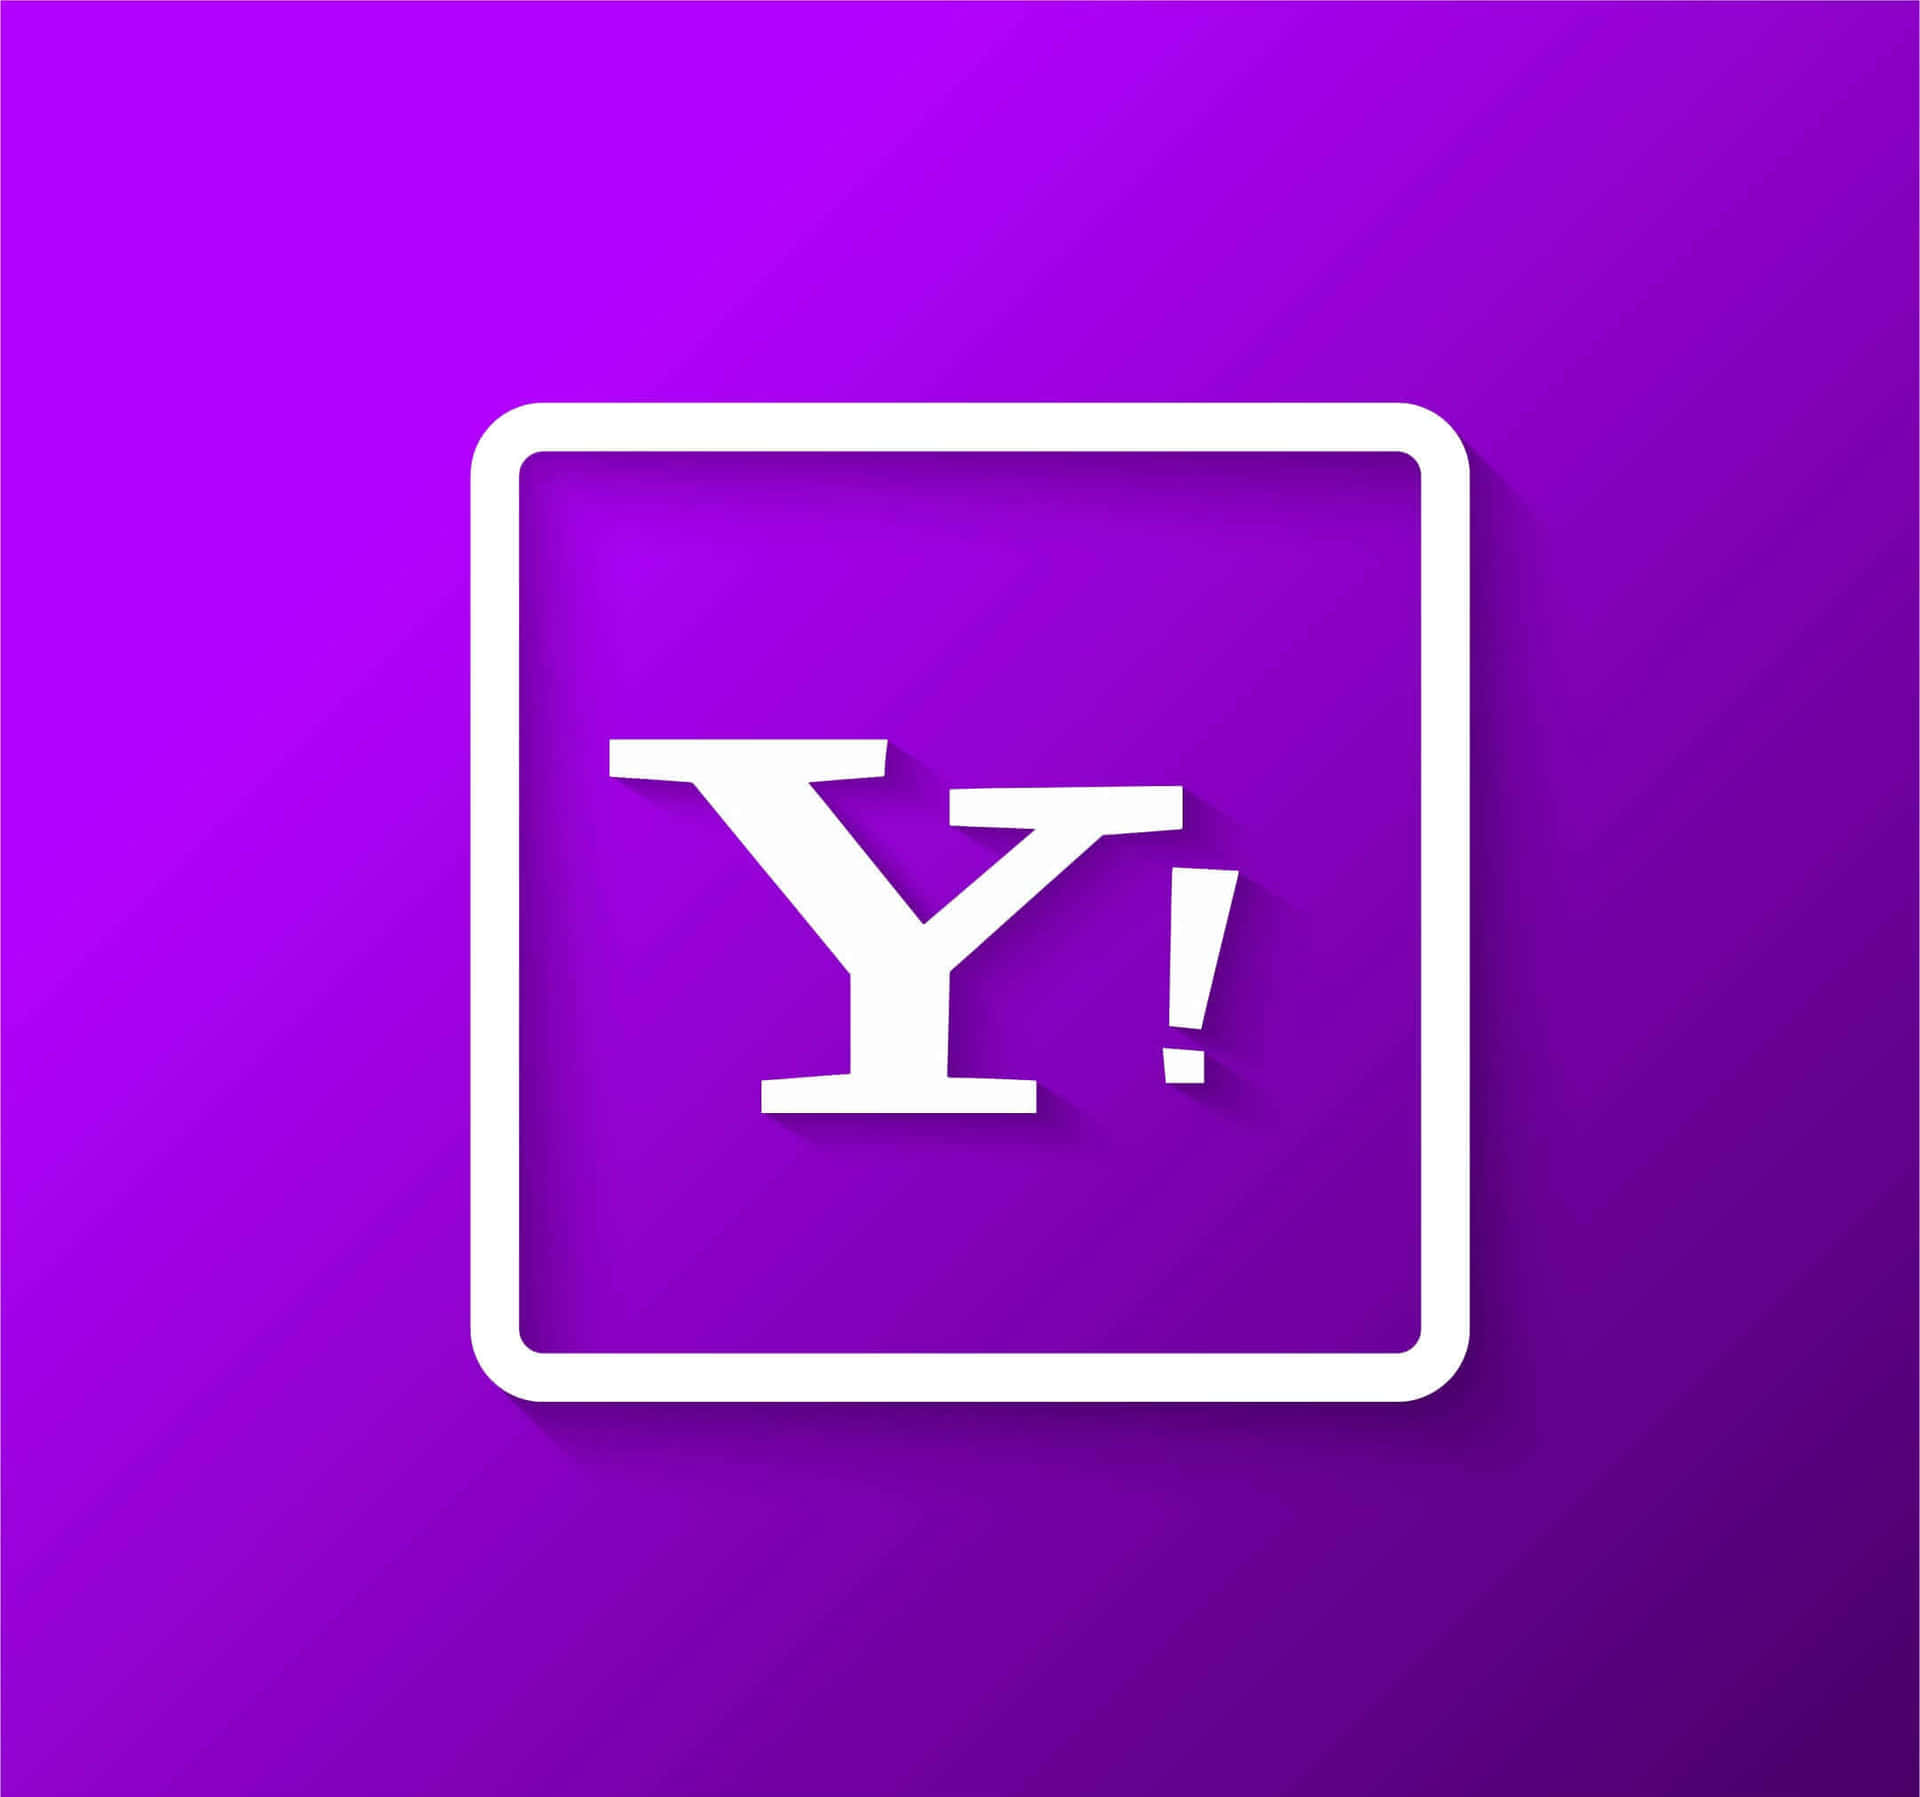 Yahoofå Opdaterede Nyheder, Sport Og Finansiel Information.